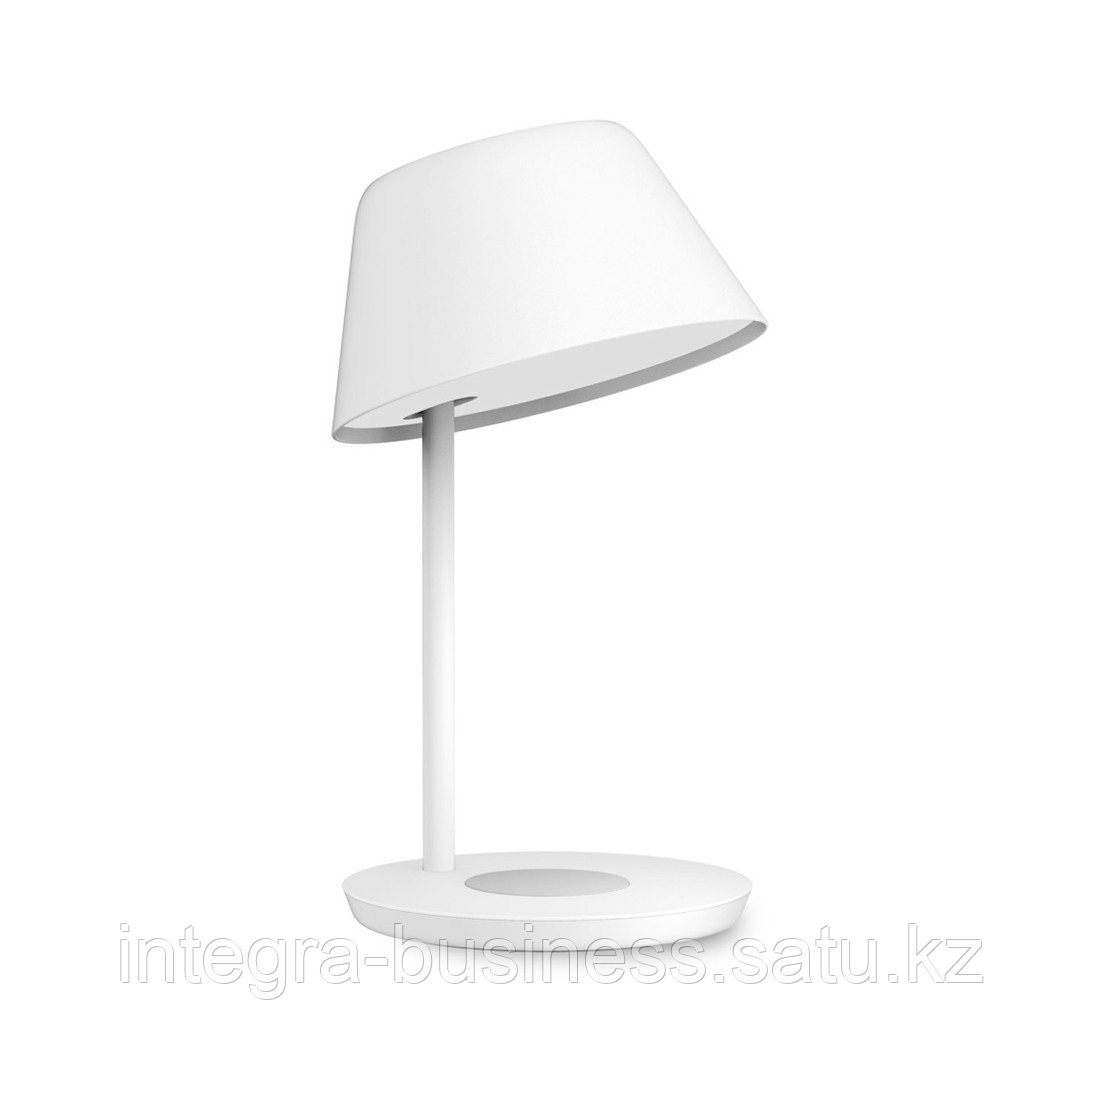 Настольная лампа Yeelight Staria Bedside Lamp Pro, фото 1